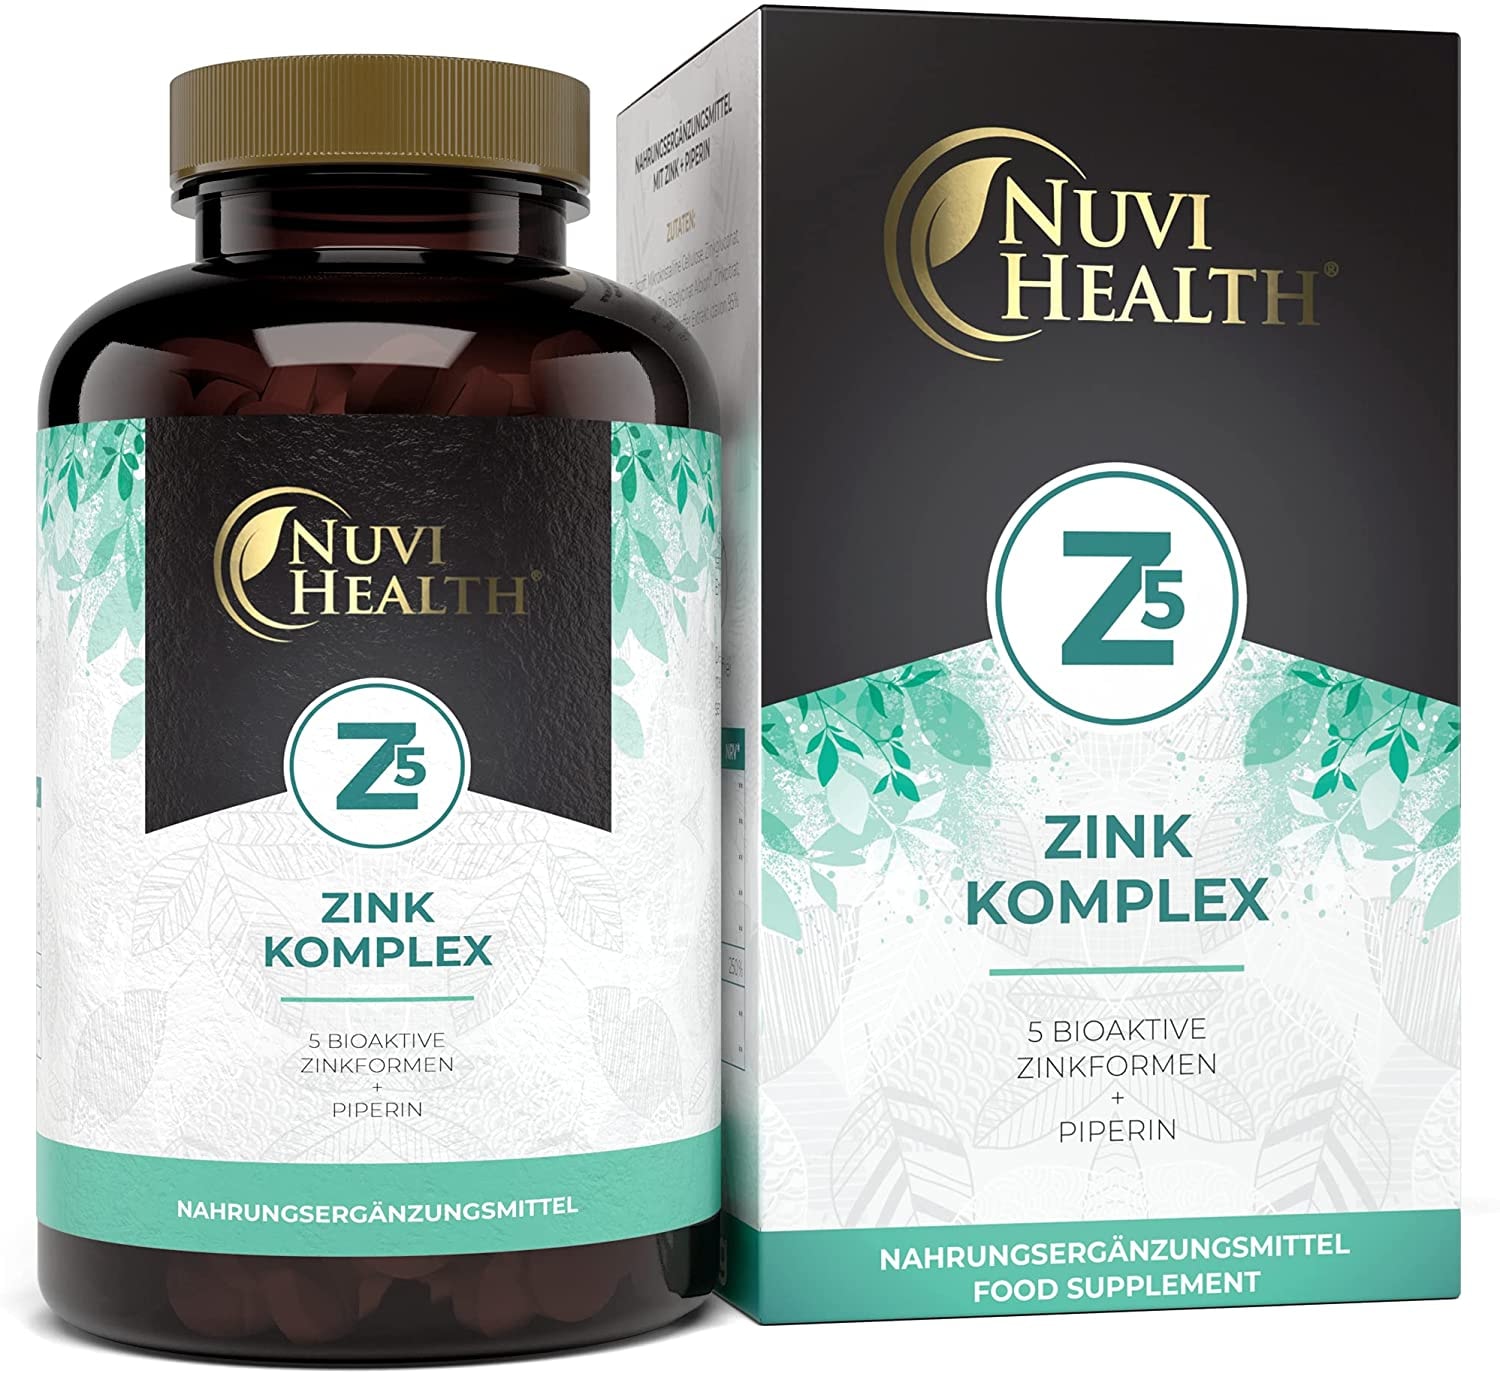 Nuvi Health Zink 5-Fach Komplex mit 25mg - 365 Tabletten - Premium: Zink-Bisglycinat (Zink-Chelat) von Albion®, Zink-Gluconat, Zink-Ascorbat, Zinkcitrat, Zinksulfat - Laborgeprüft - Hochdosiert